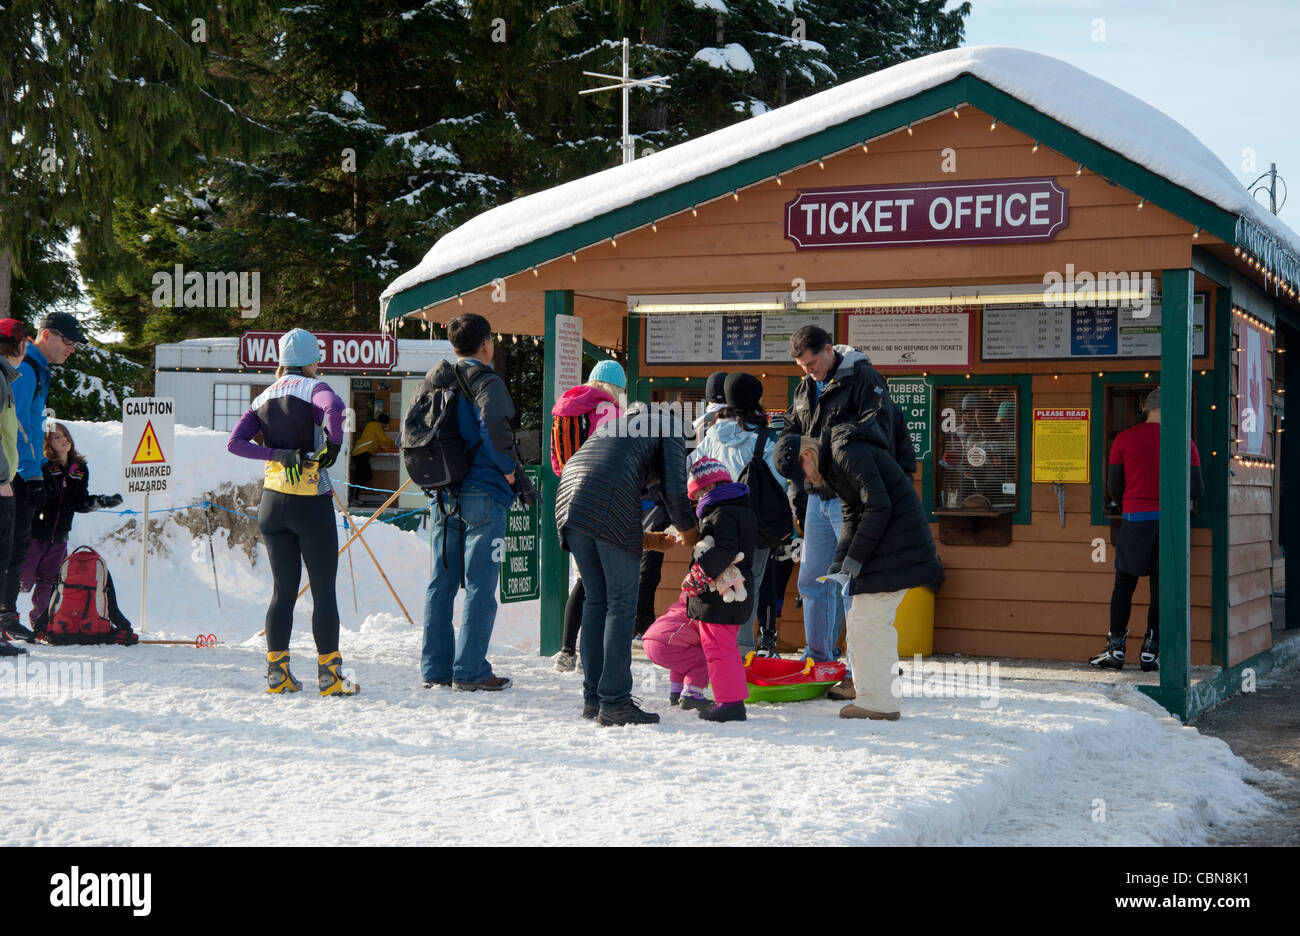 Billetterie au cross country ski resort, près de Vancouver, Colombie-Britannique, Canada Banque D'Images